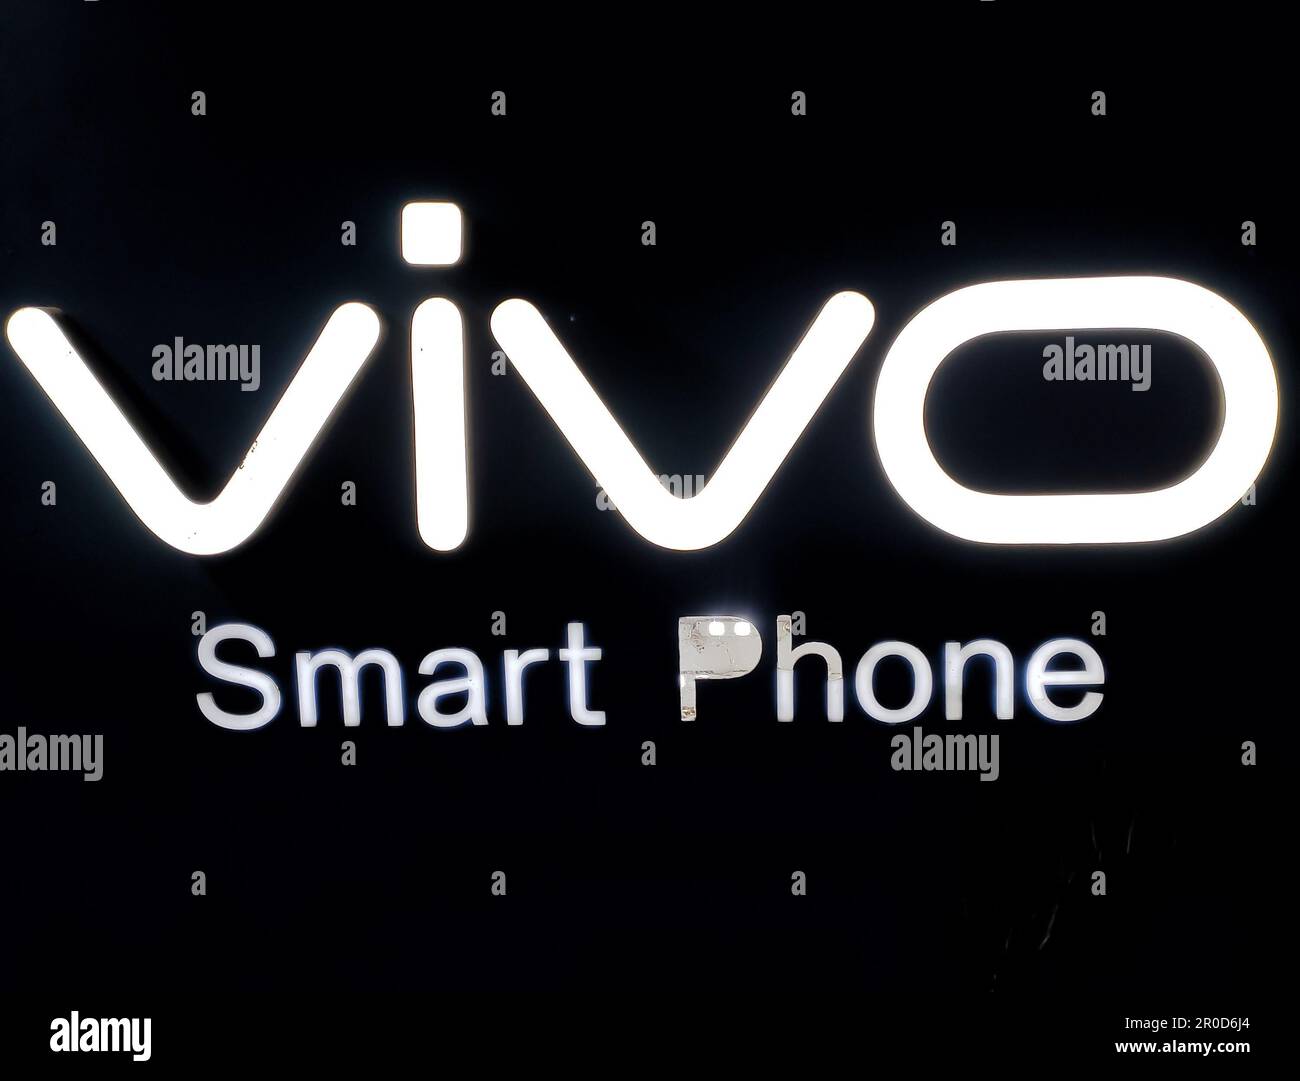 Markendarstellung der Smartphone-Marke VIVO in einem Mobiltelefongeschäft. Stockfoto